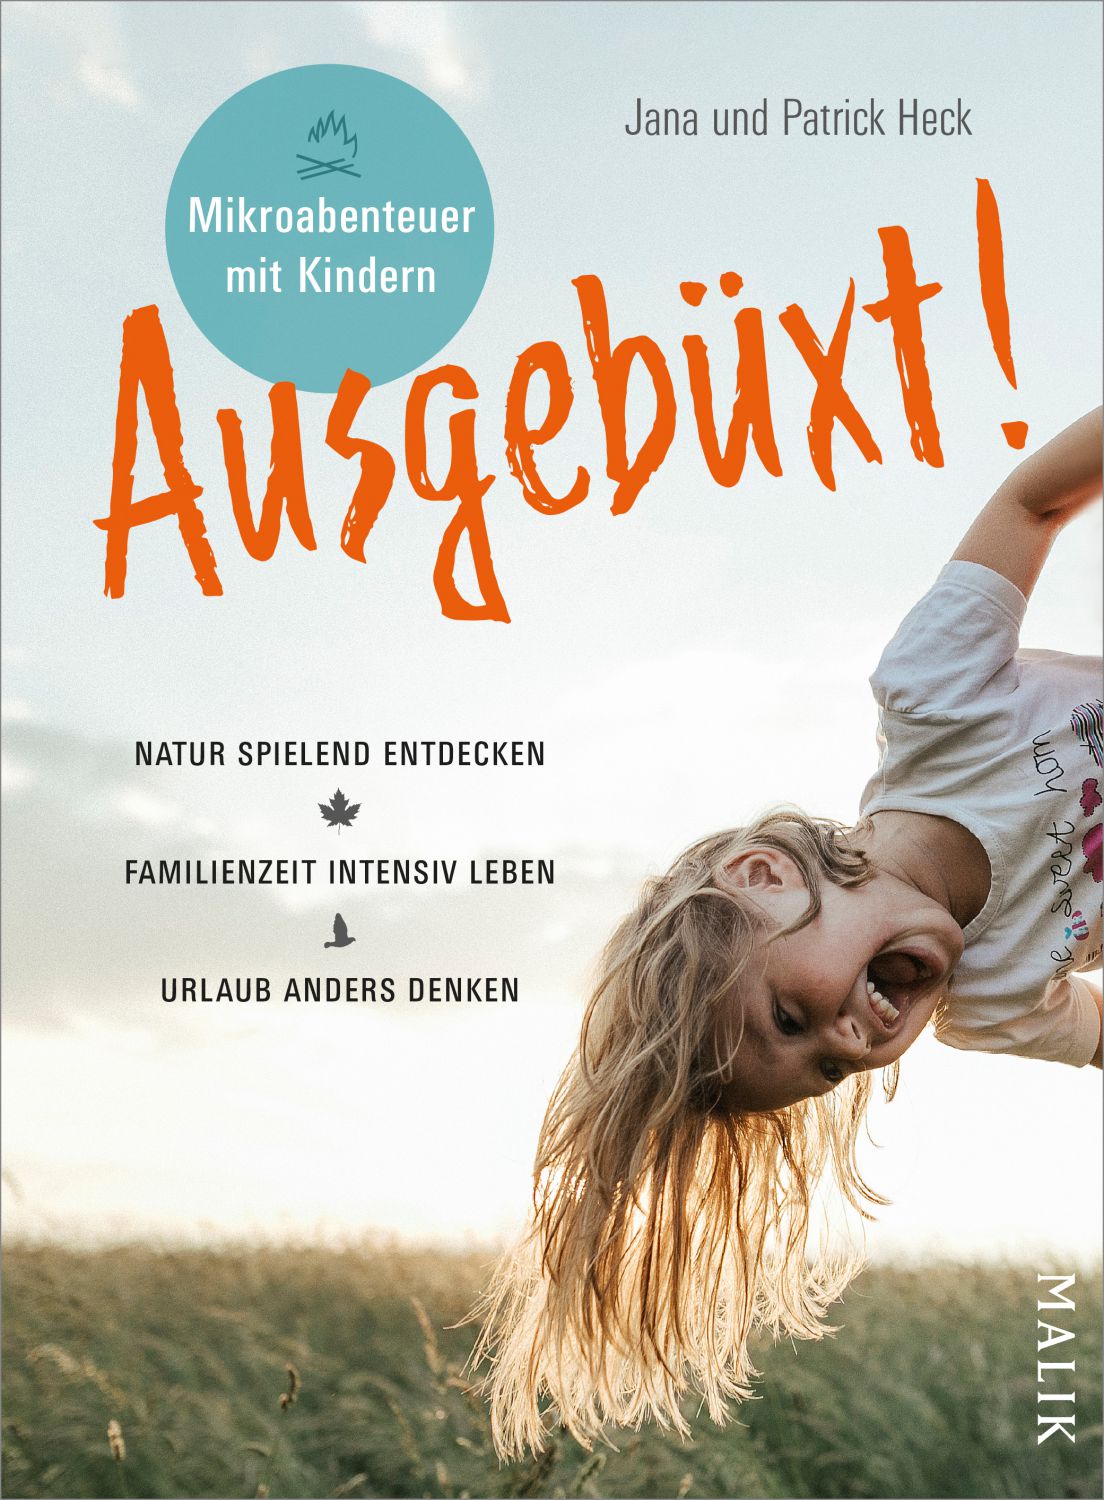 Ausgebüxt! - Mikroabenteuer mit Kindern (in German)